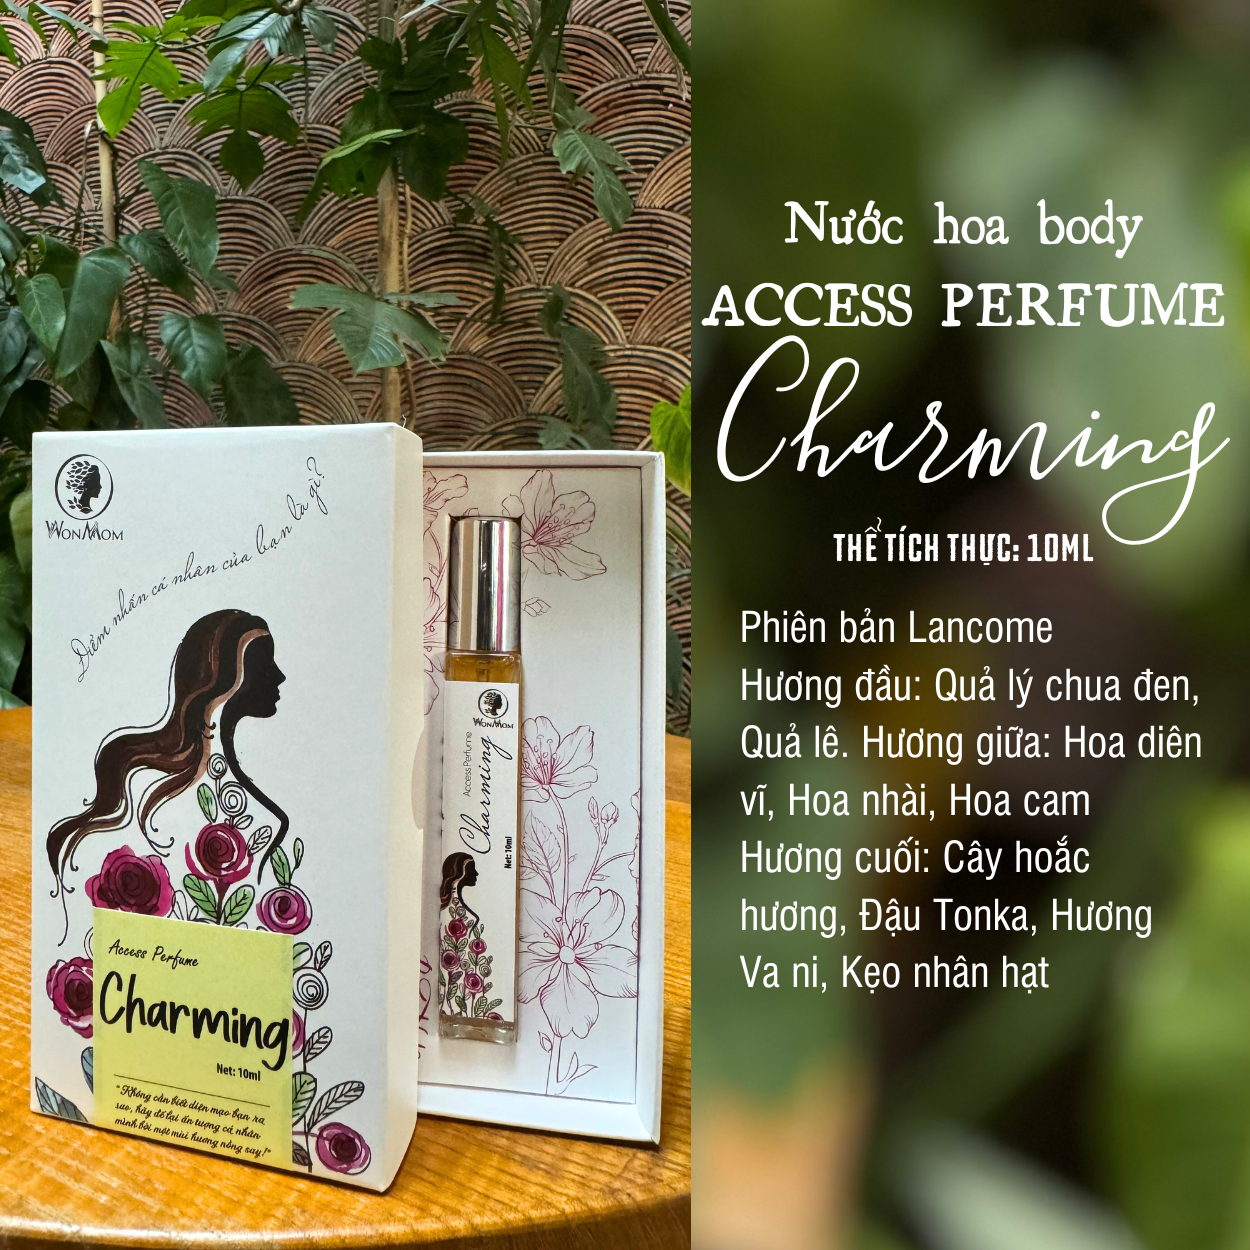 Nước hoa toàn thân Access perfume - Charming